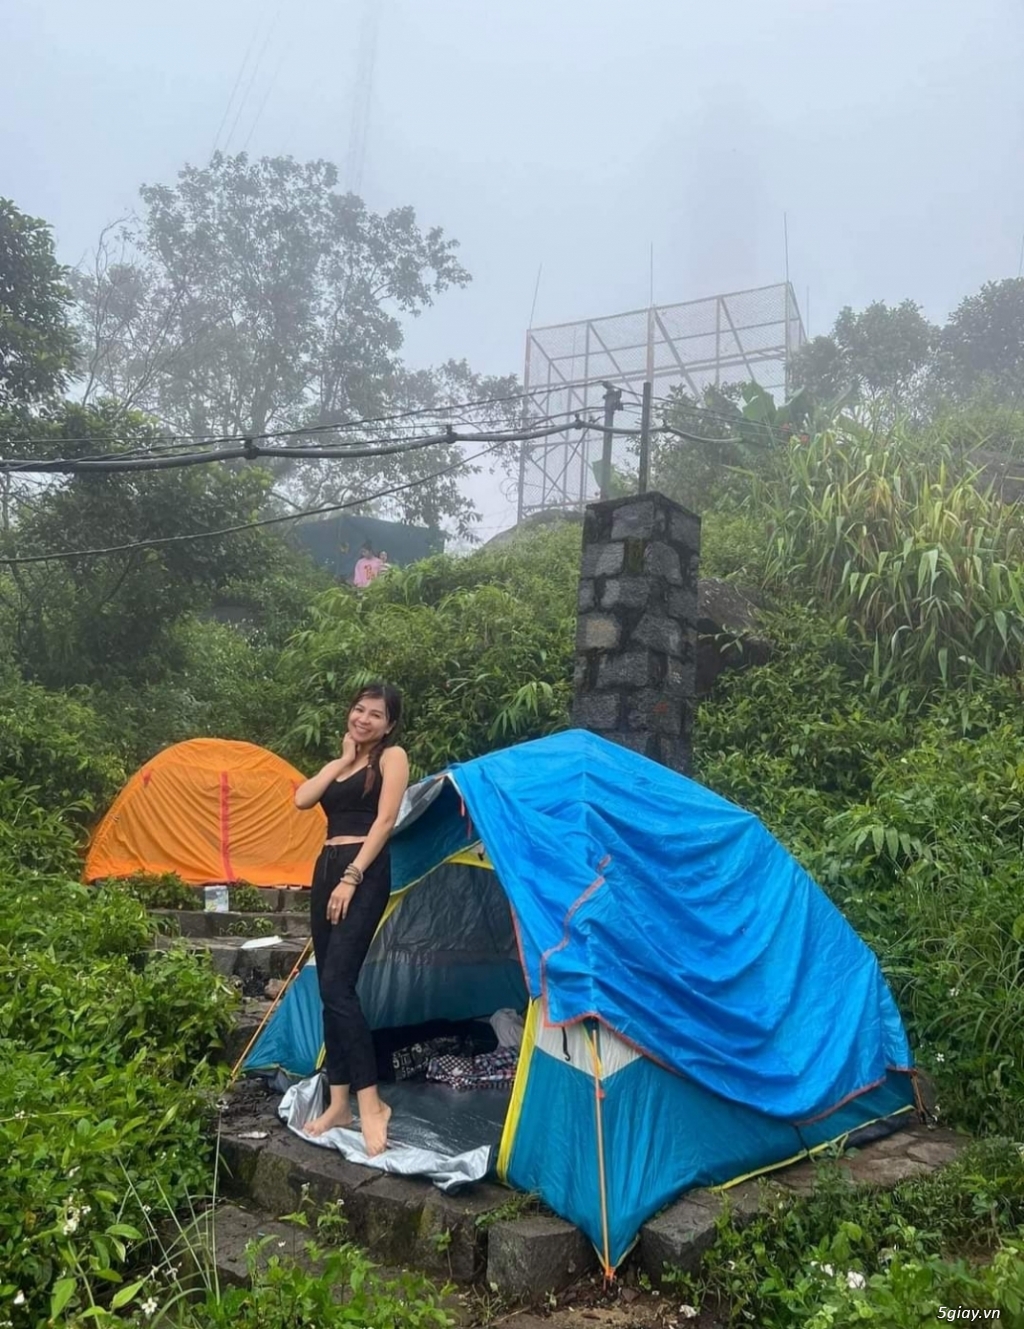 Camping Chill Tây Ninh cho thuê lều trại, túi ngủ đủ lịch - 3